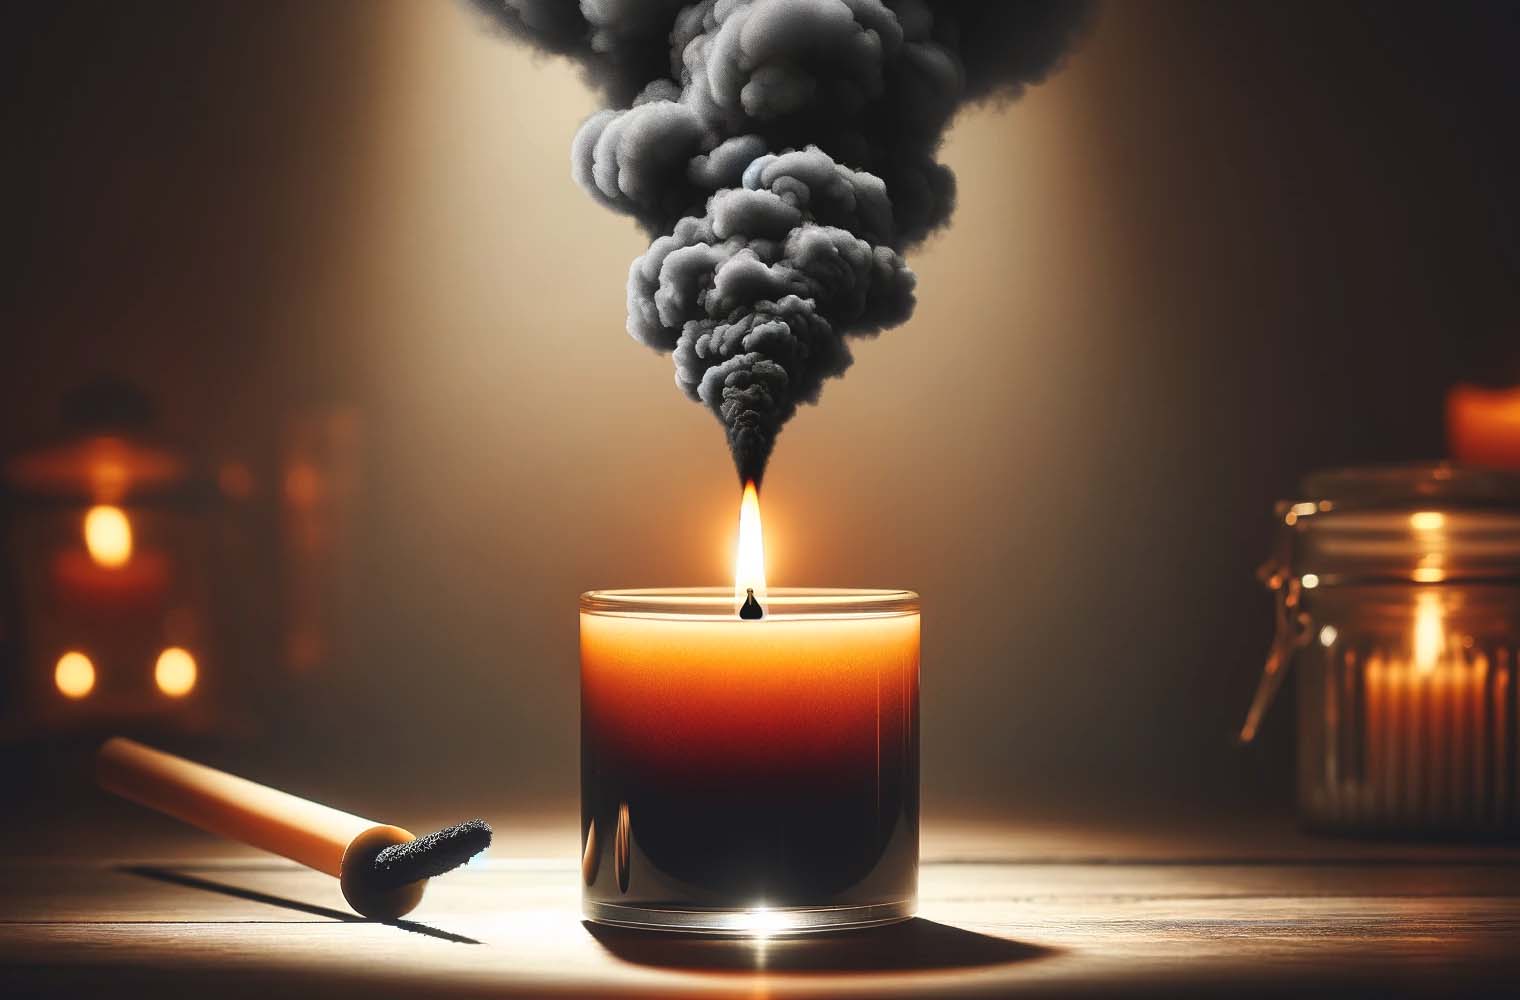 Prečo má sviečka čierny dym